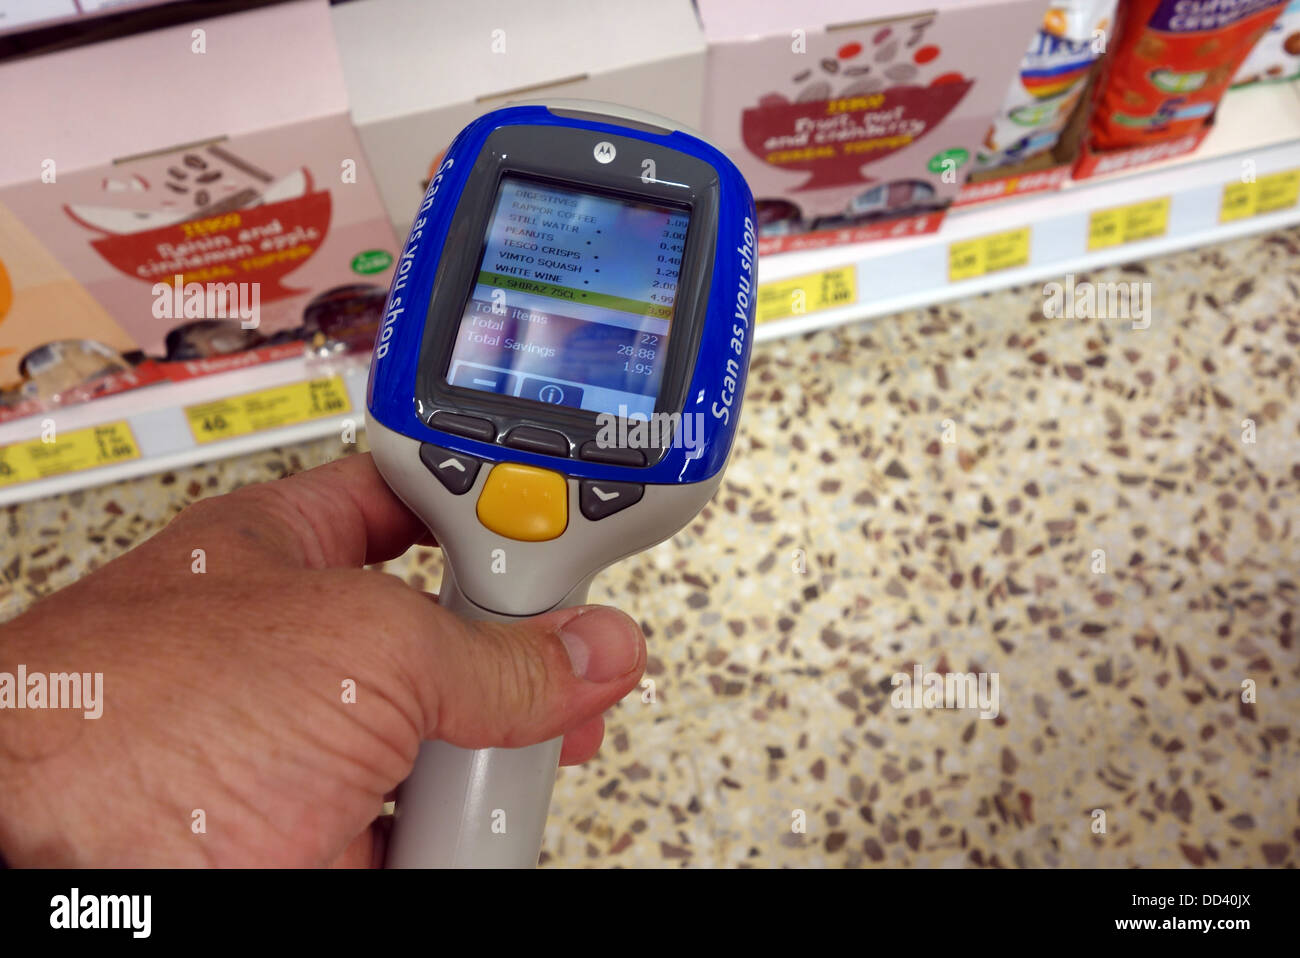 Ein Shopper mit einem Shop und Scan-Gerät in einem Tesco Speicher, UK Stockfoto